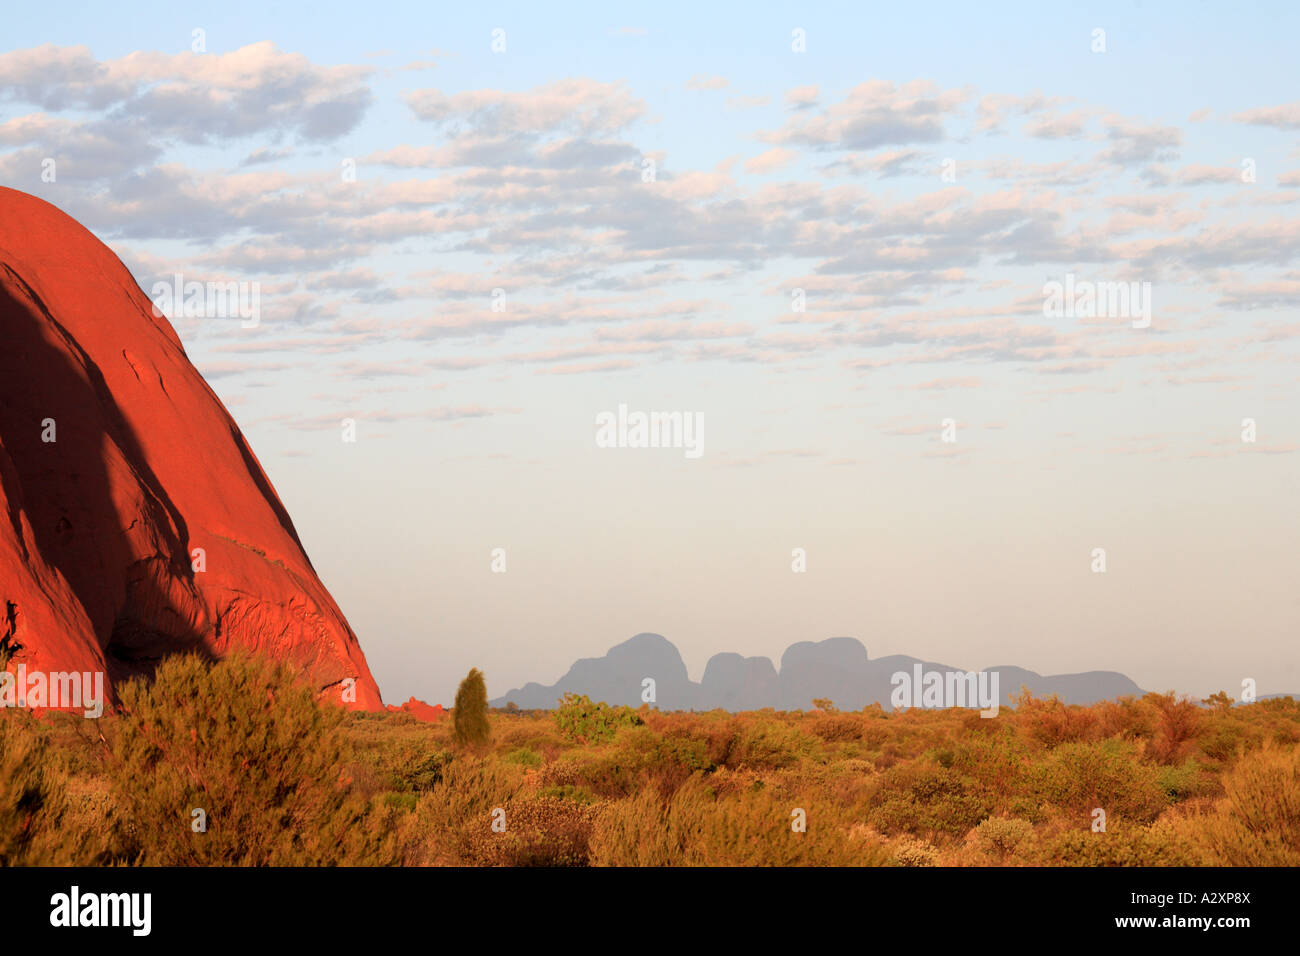 Ayers Rock avec olgas sur horizon - uluru olgas - Territoire du Nord - Australie Banque D'Images